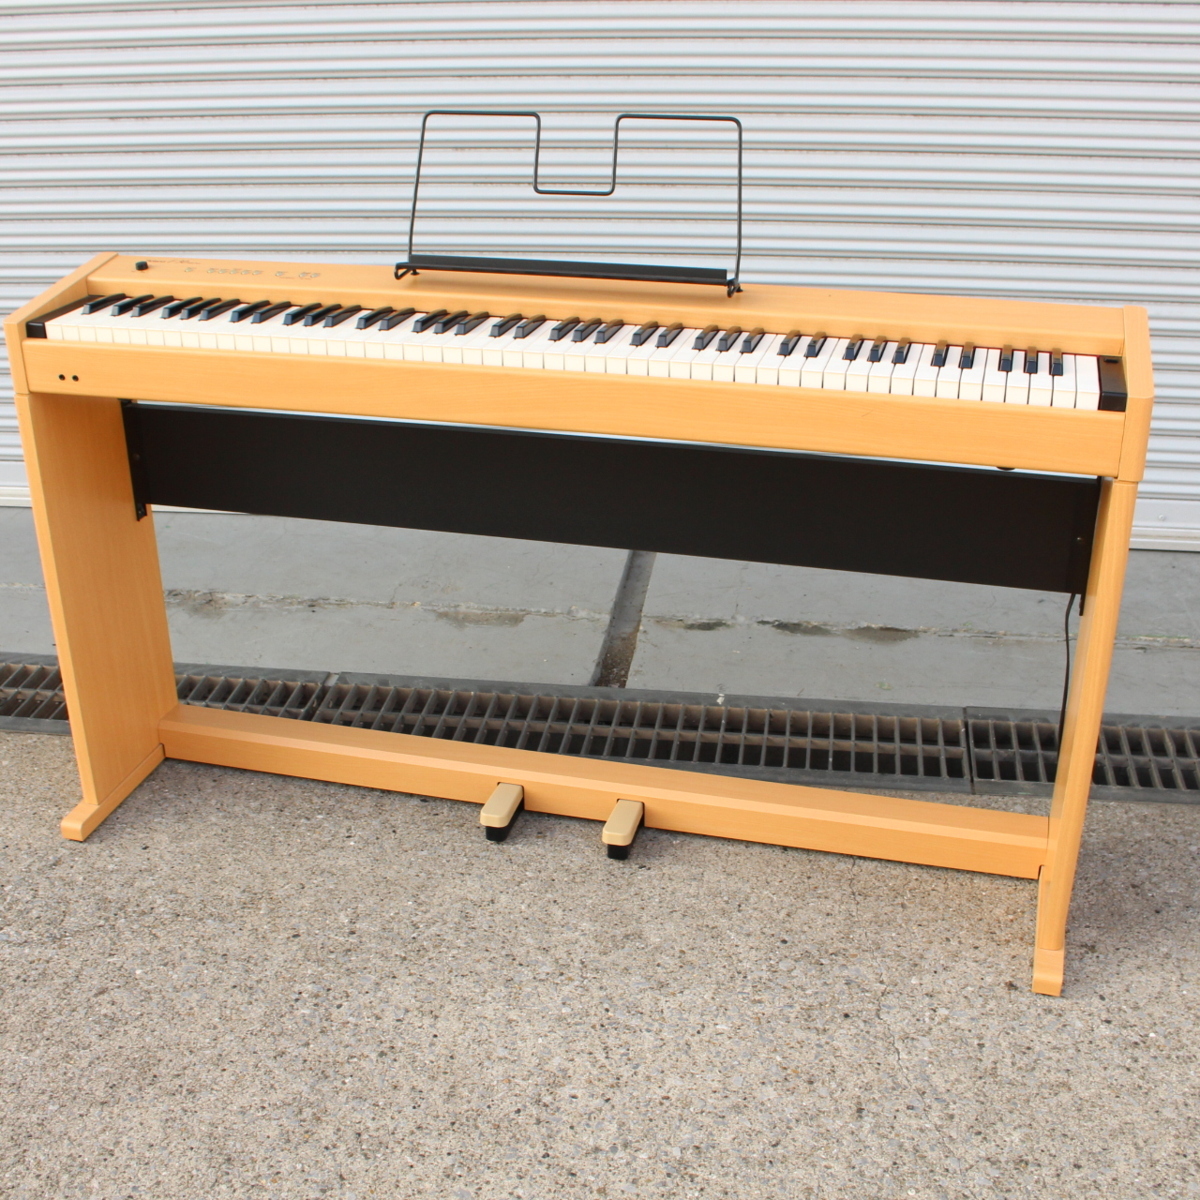 横浜市青葉区にて ローランド 電子ピアノ F-30 2002年製 を出張買取させて頂きました。